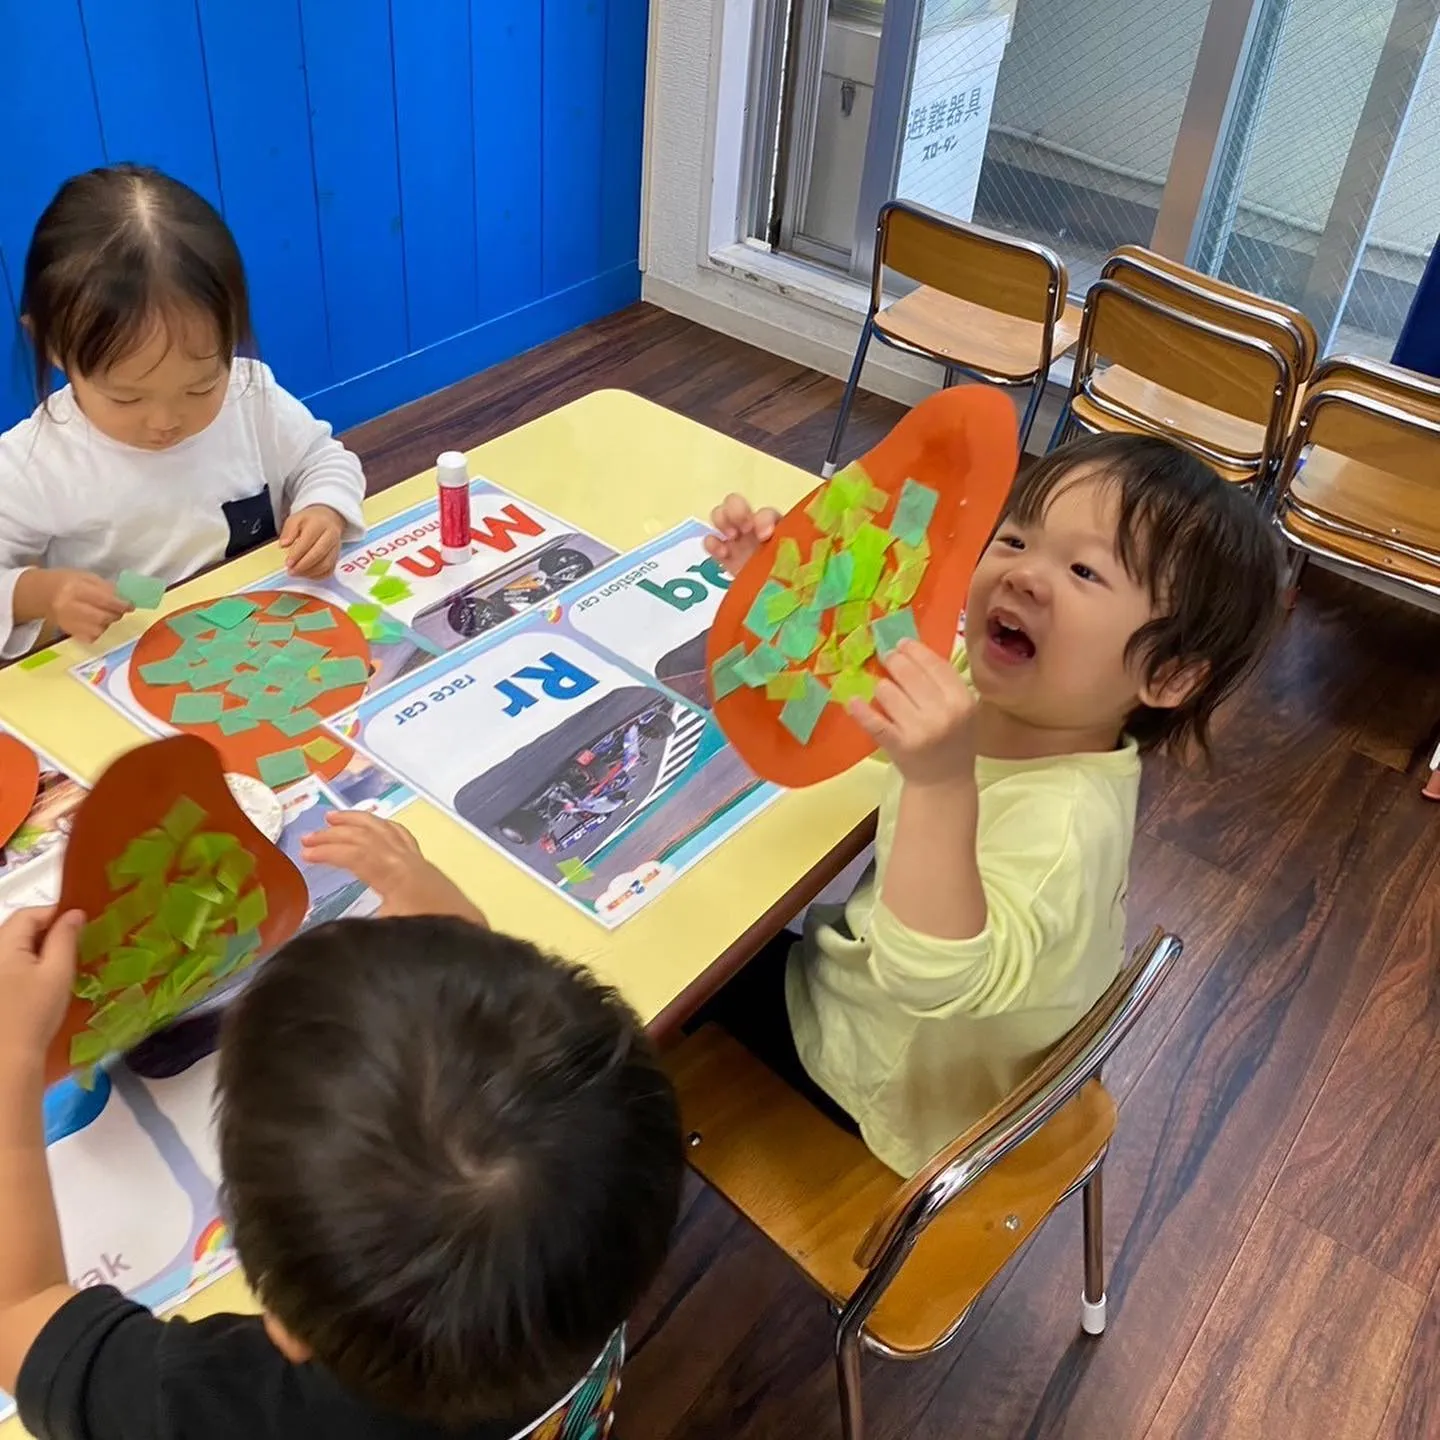 11/9(木) Toddler class today